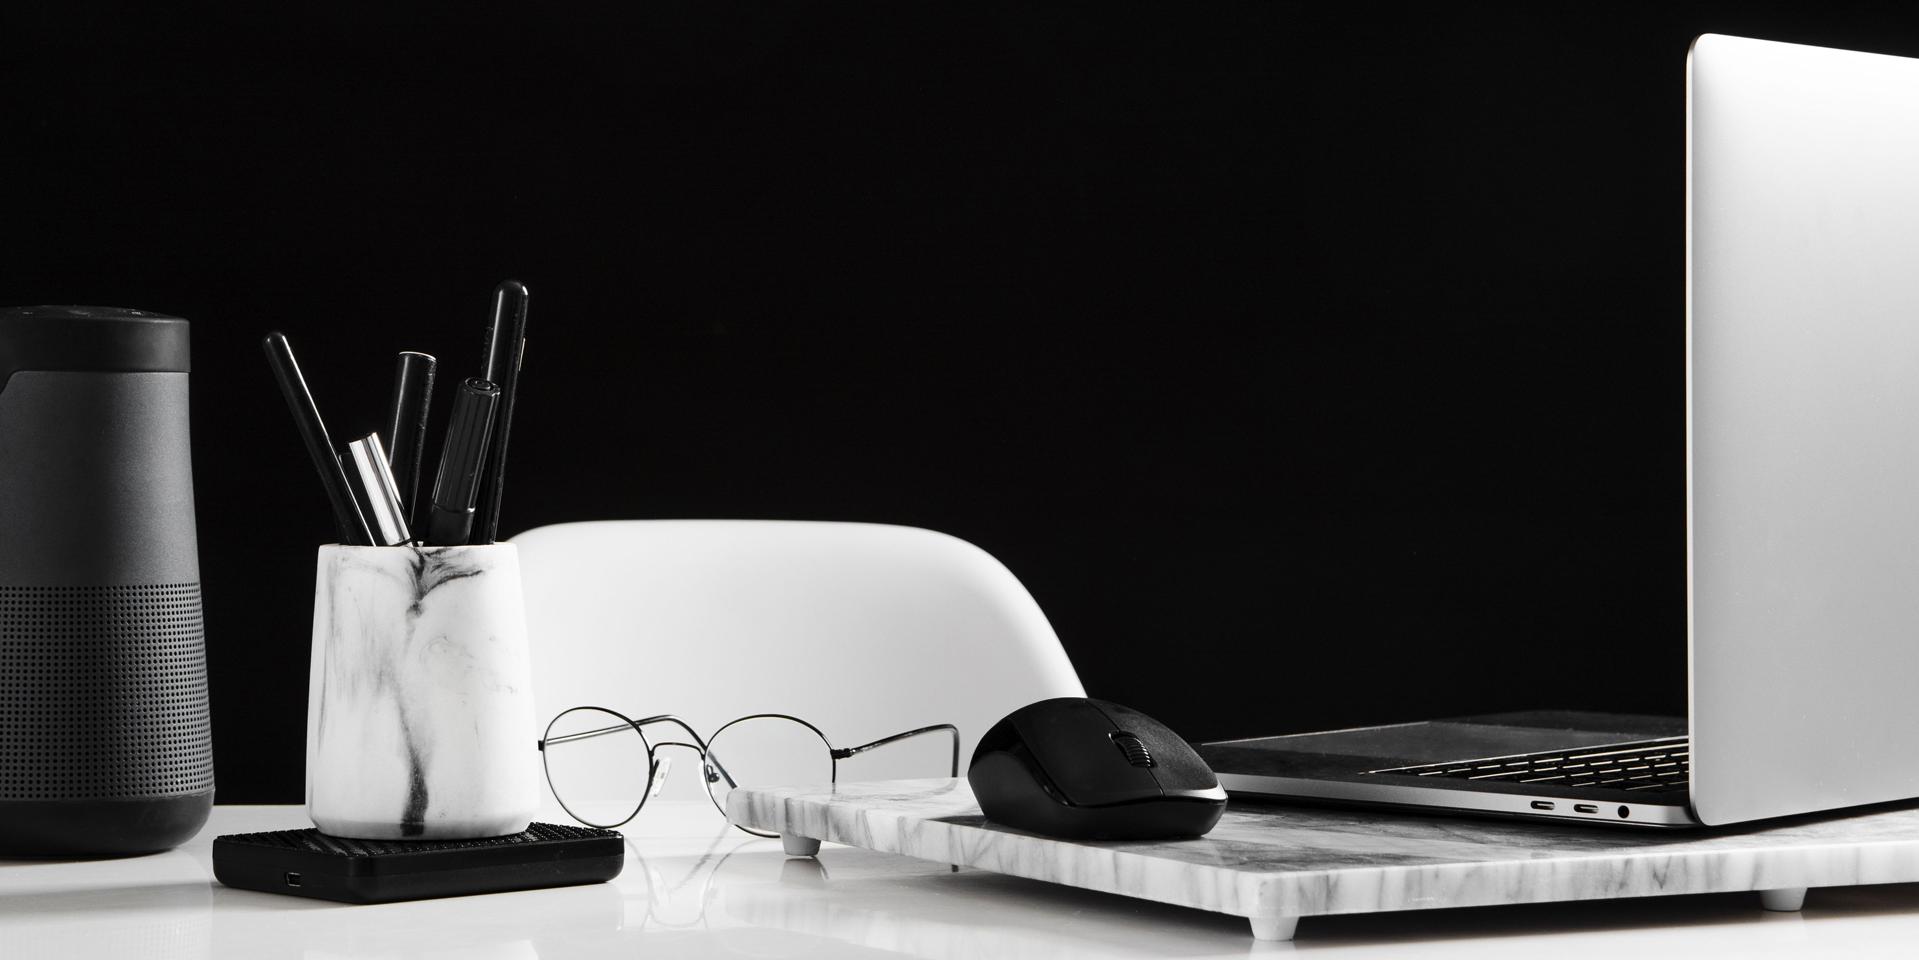 Ein aufgeräumter Arbeitsbereich mit einem geöffneten Laptop auf der rechten Seite und einer Computer-Maus. Davor liegt eine Brille. Auf der linken Seite des Bildes befindet sich ein Behälter mit Stiften.